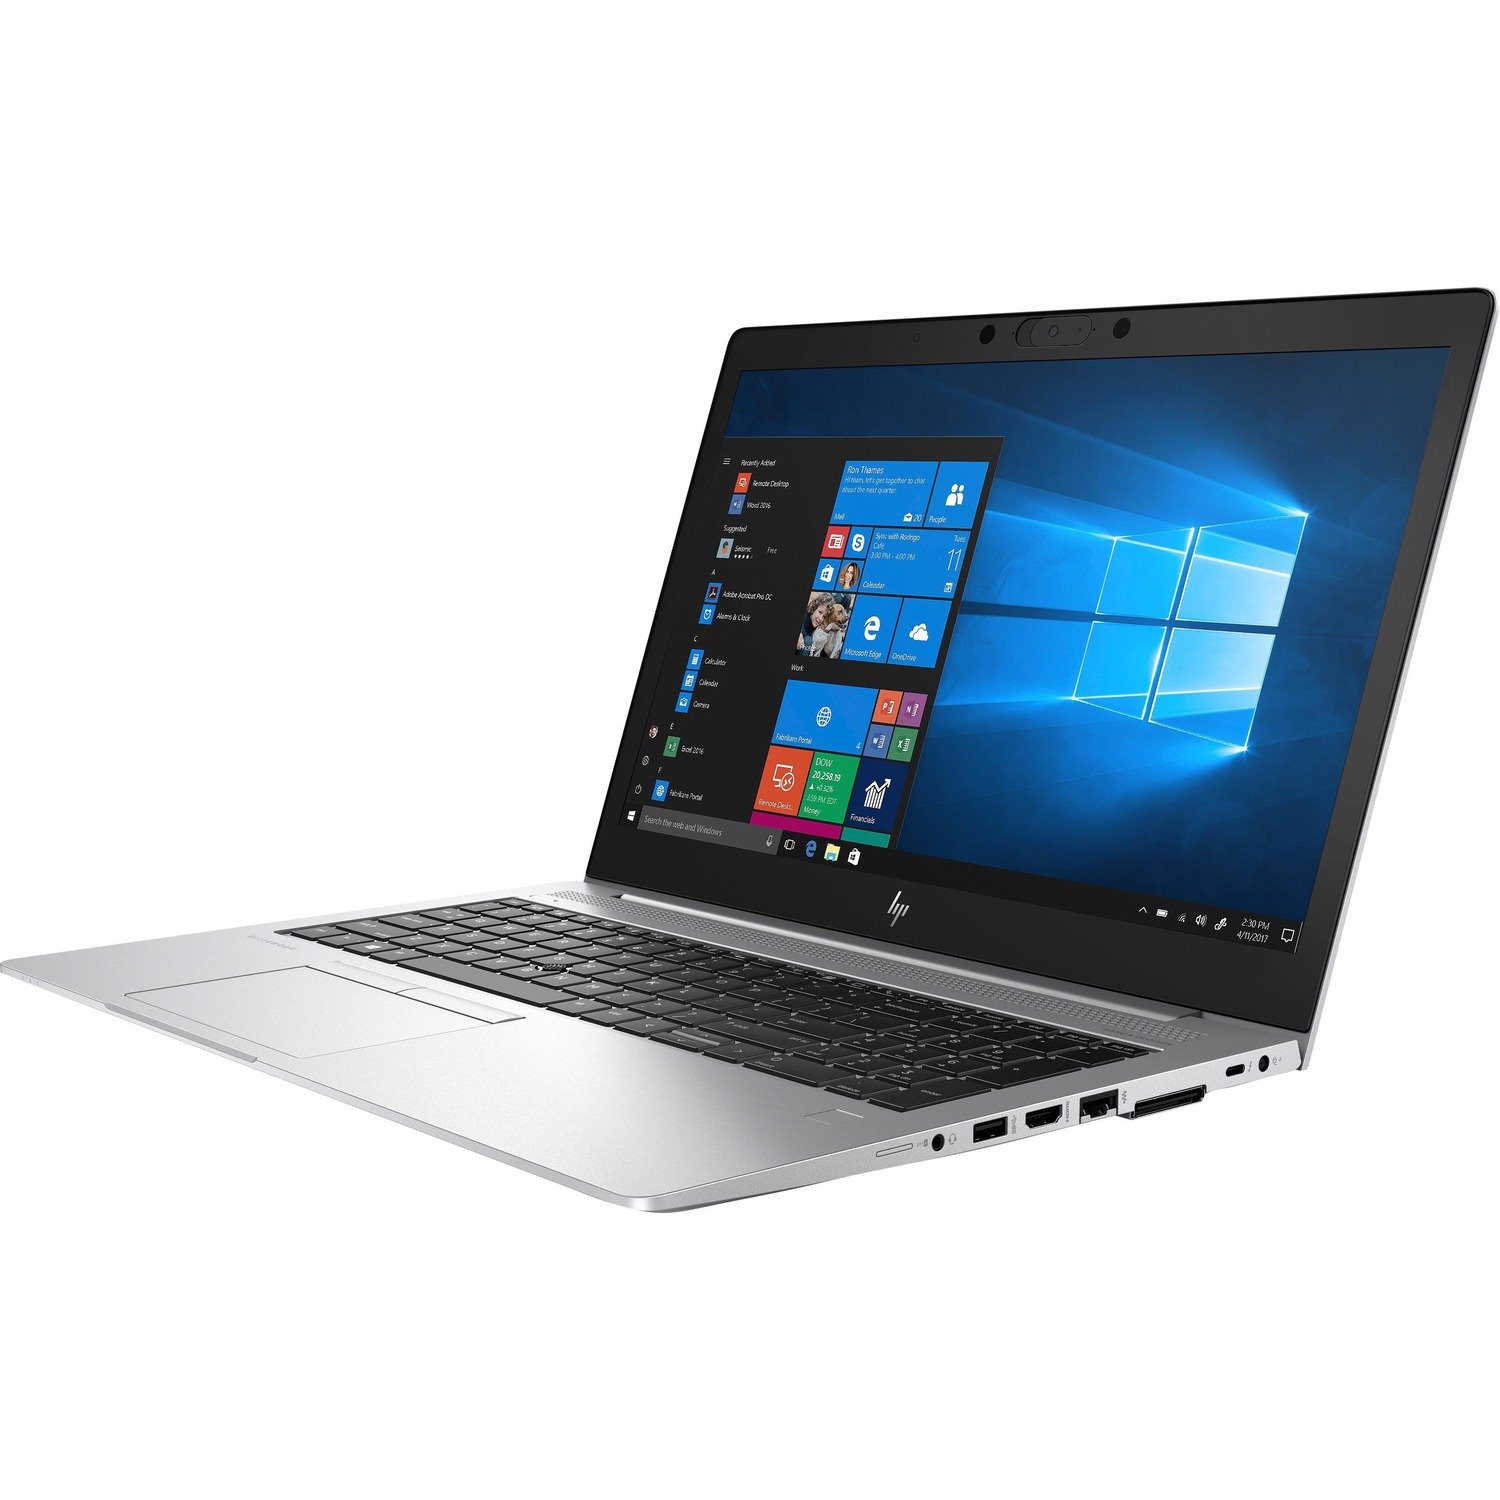 HP EliteBook 850 G6 15.6" Notebook - 1920 x 1080 - Intel Core i7 8th Gen i7-8565U Quad-core (4 Core) 1.80 GHz - 8 GB Total RAM - 256 GB SSD